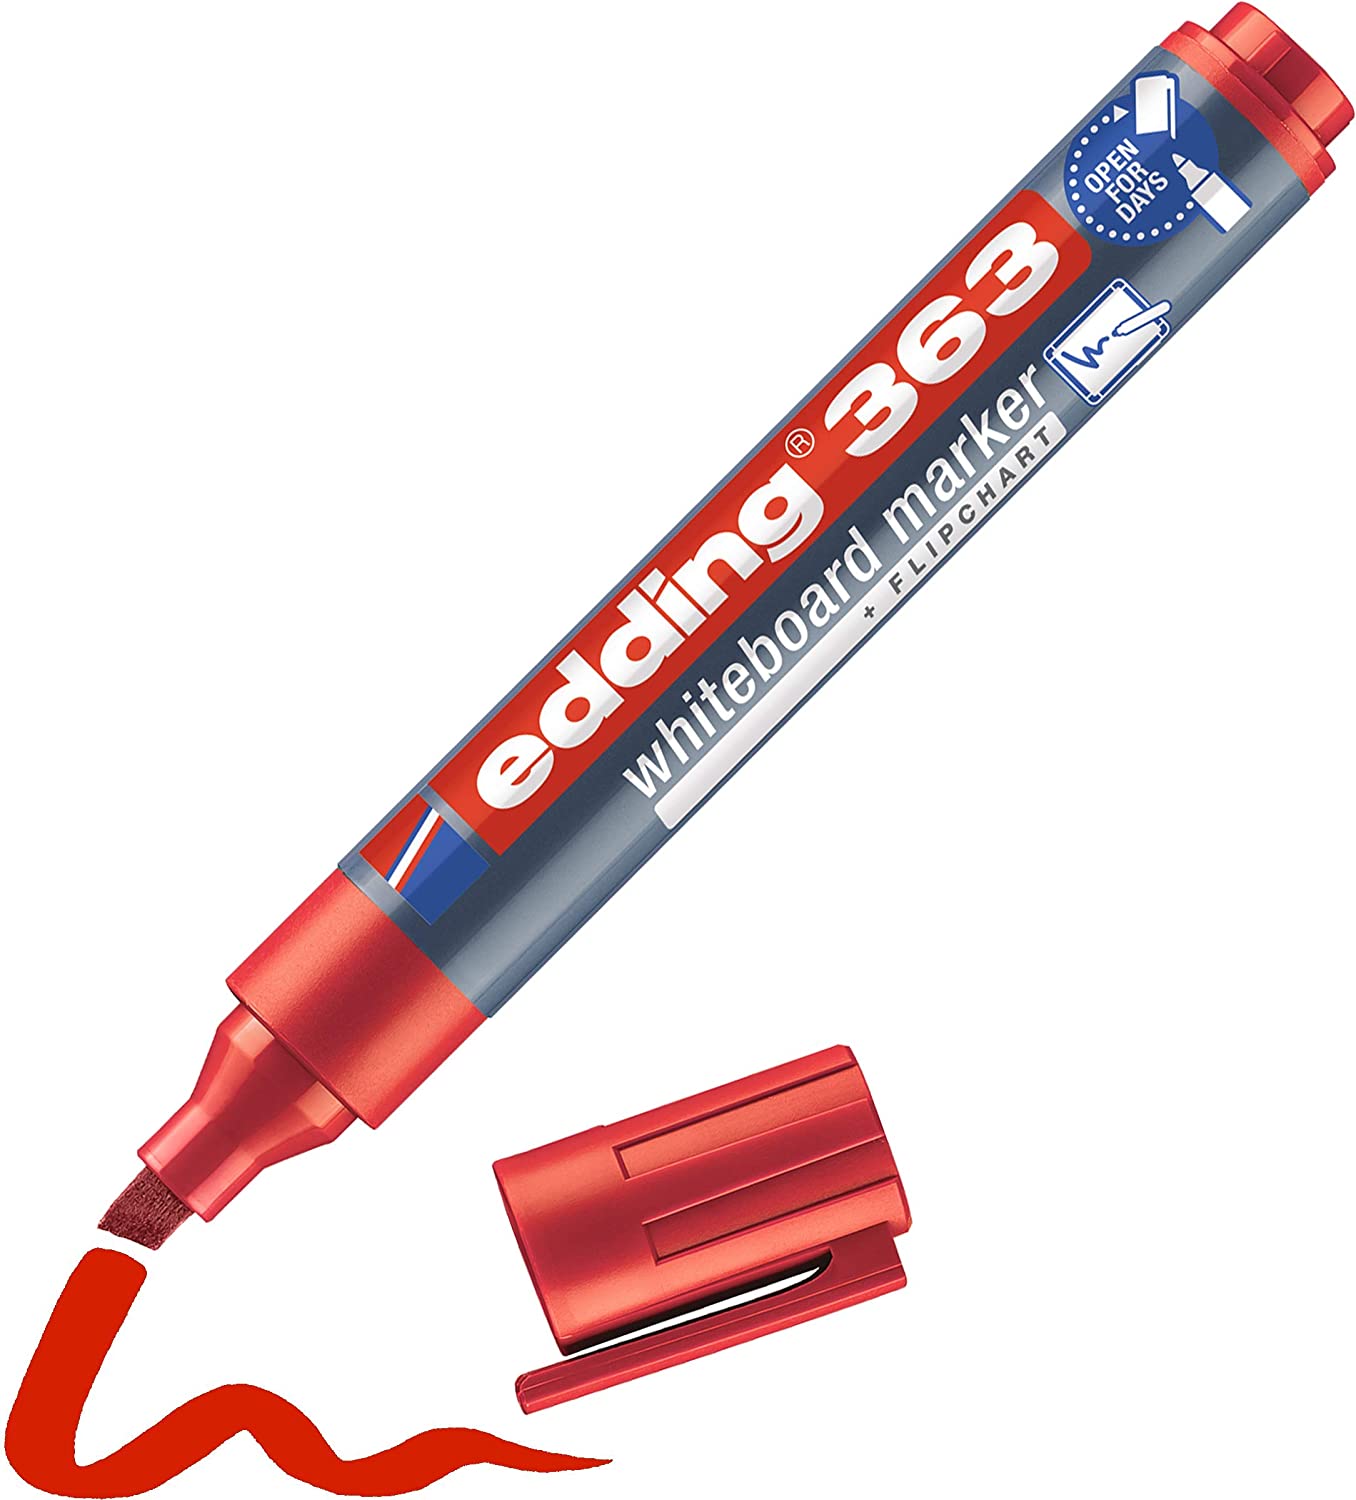 Edding 366 - Rotulador para pizarra blanca, 0.039 in, color rojo